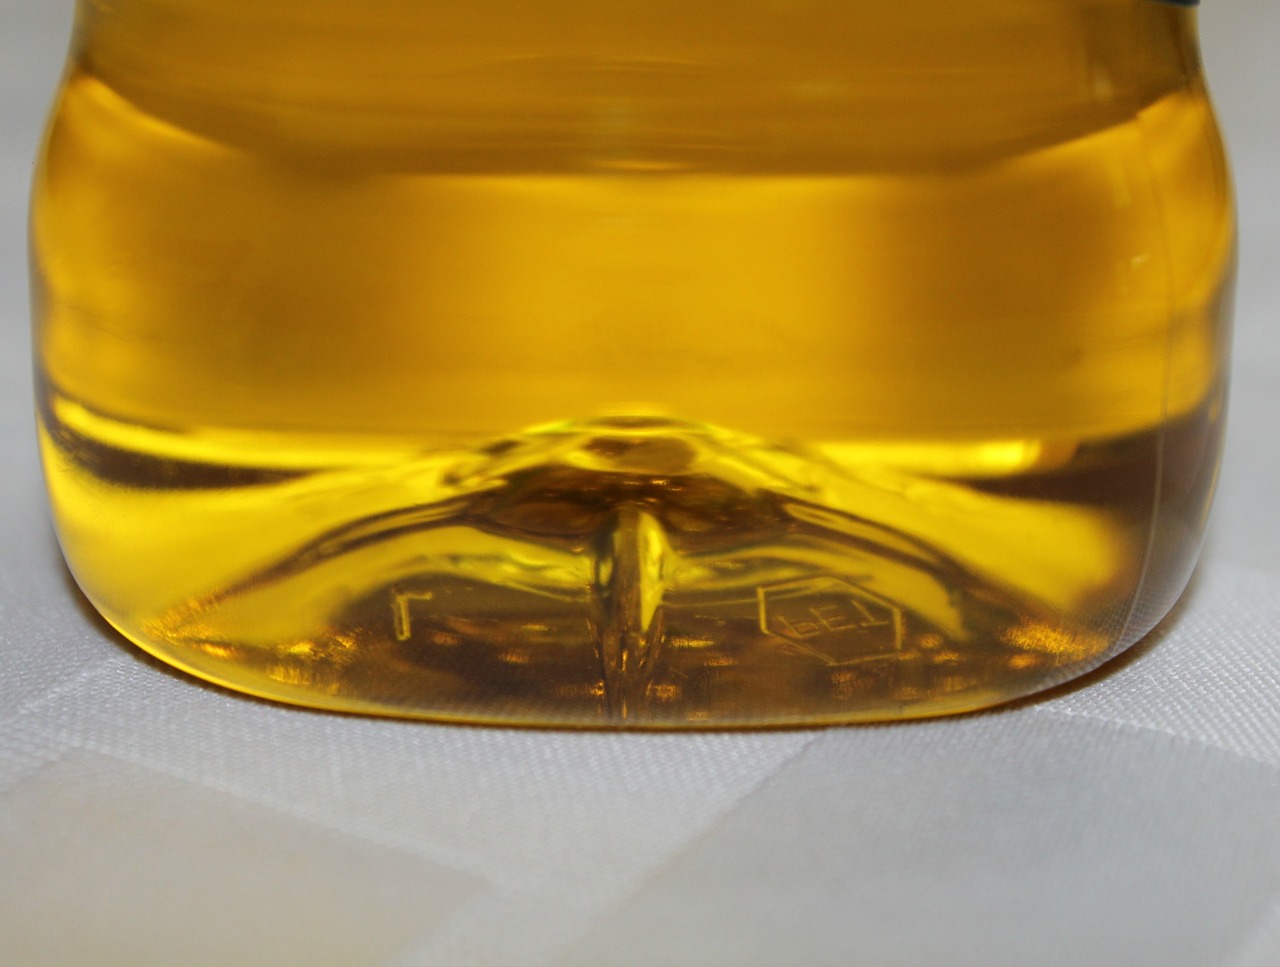 Aceite de oliva: su situación se solucionará por decreto